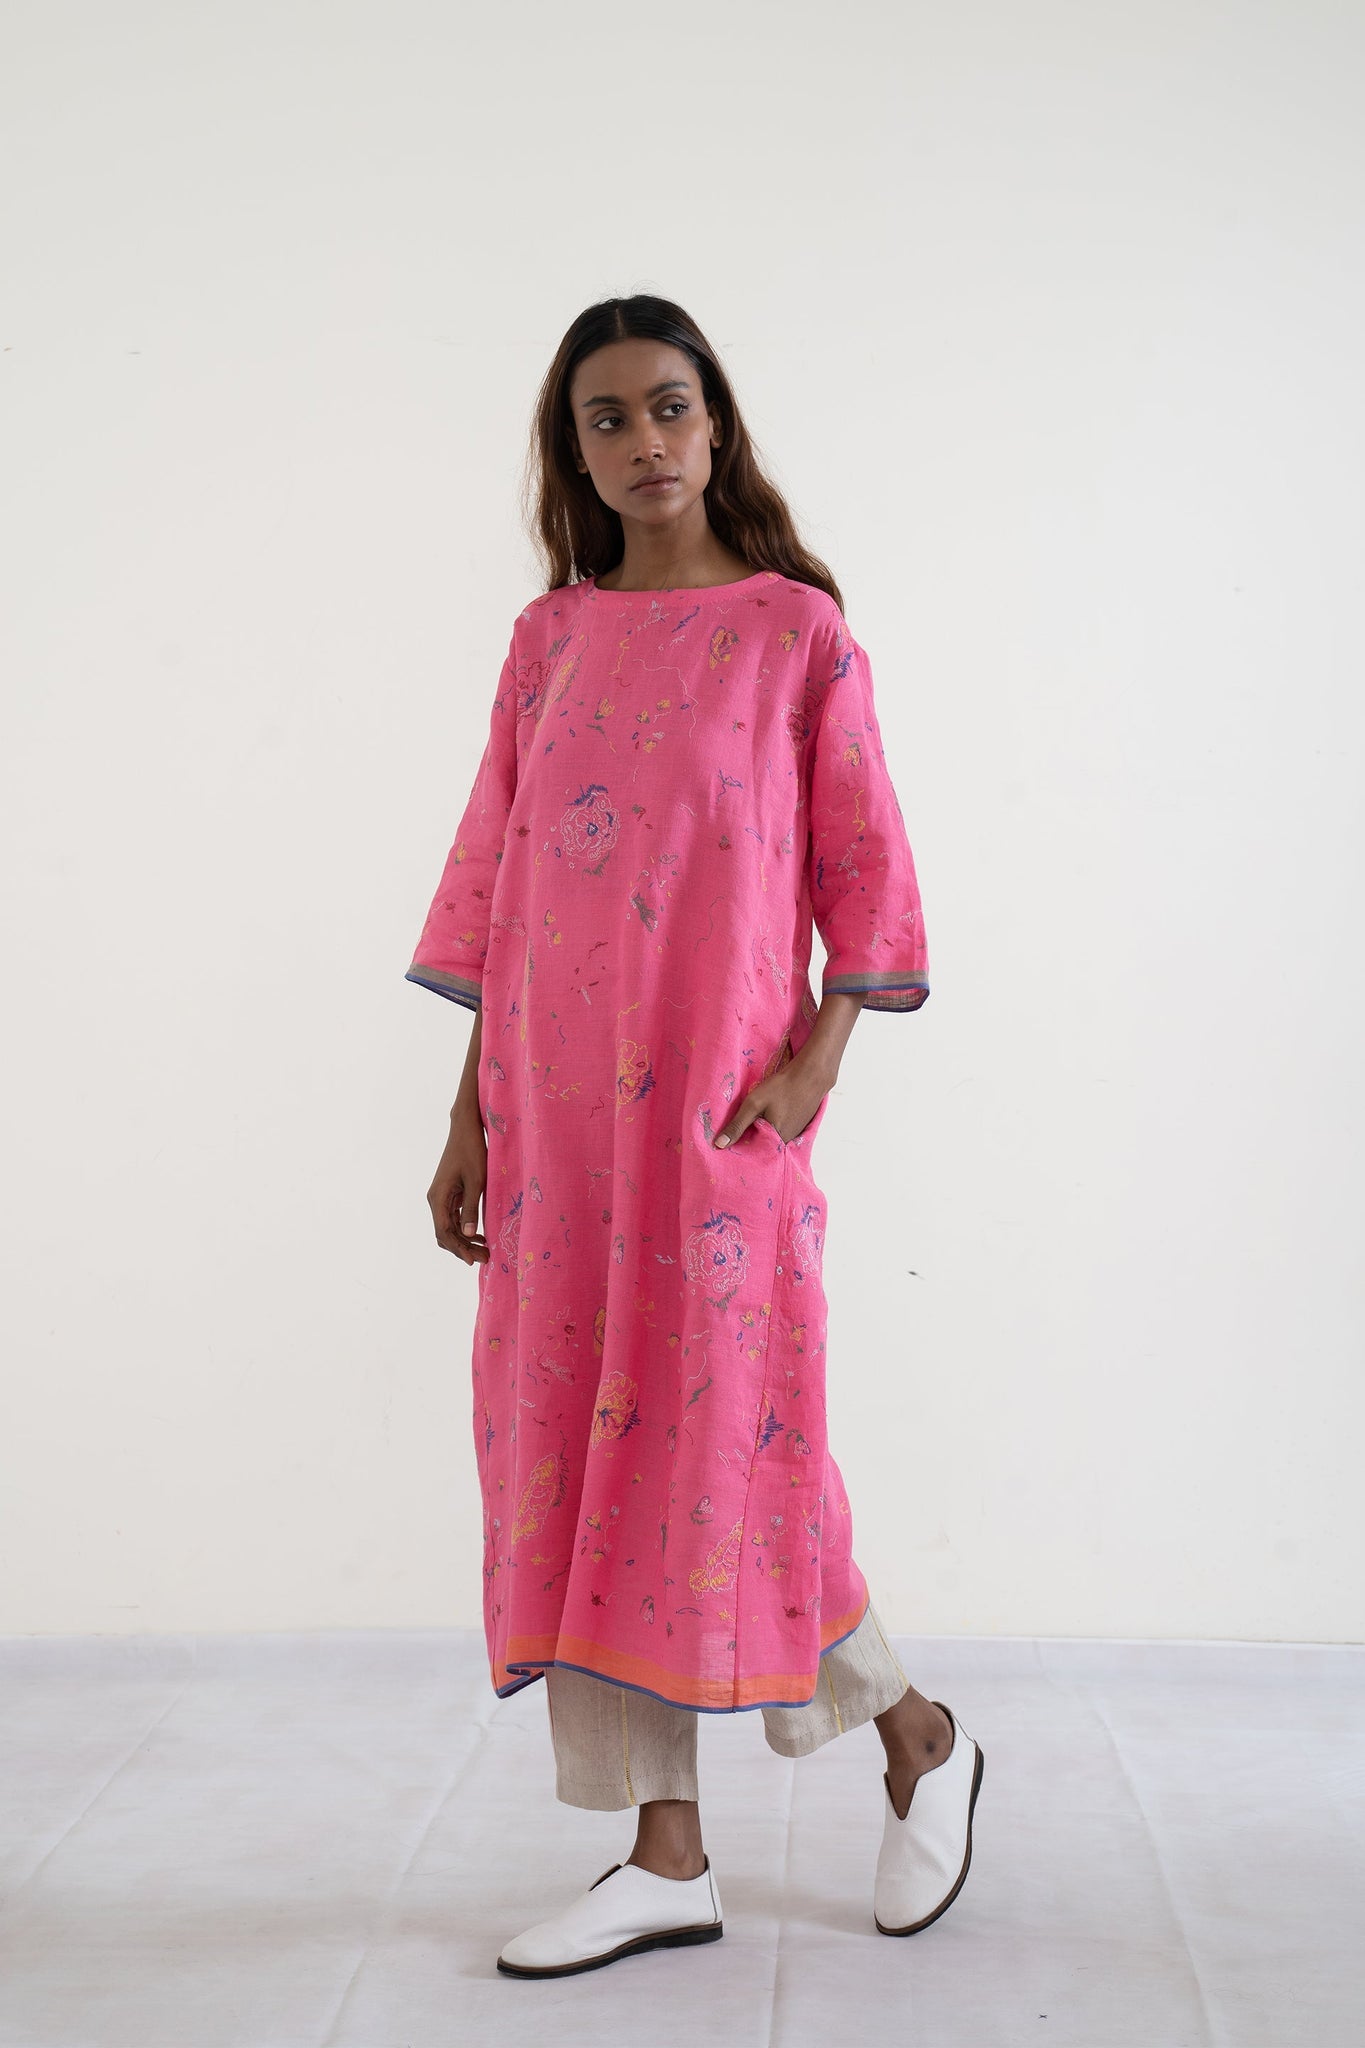 handwoven linen Round neck bayleaf dress (pink)